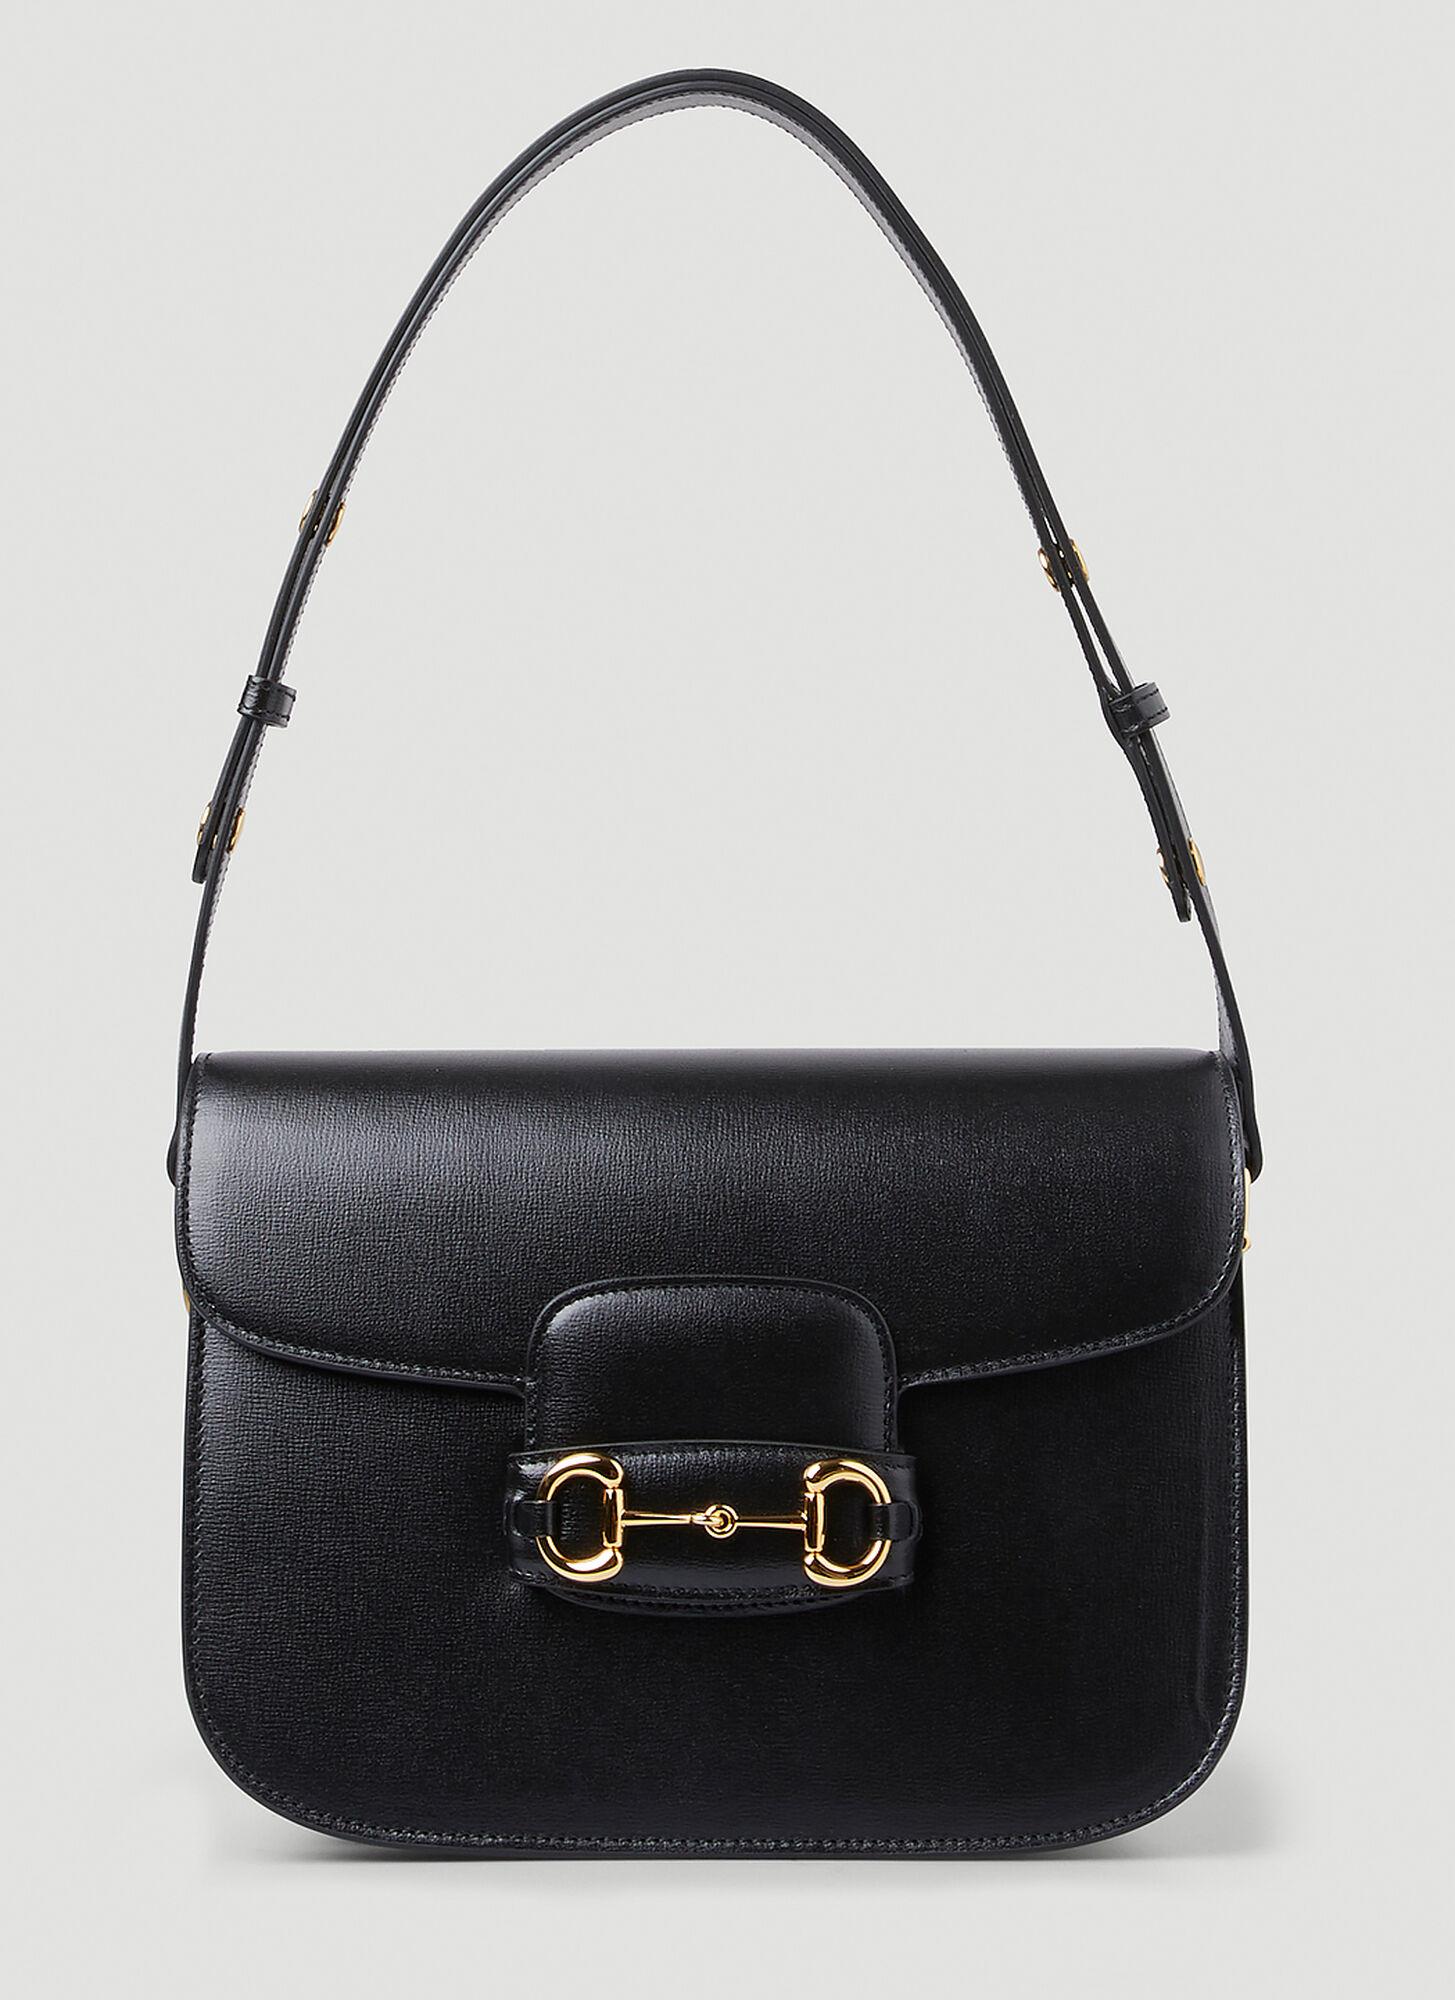 Gucci Horsebit 1955 Shoulder Bag in Black - Save 40% | Lyst